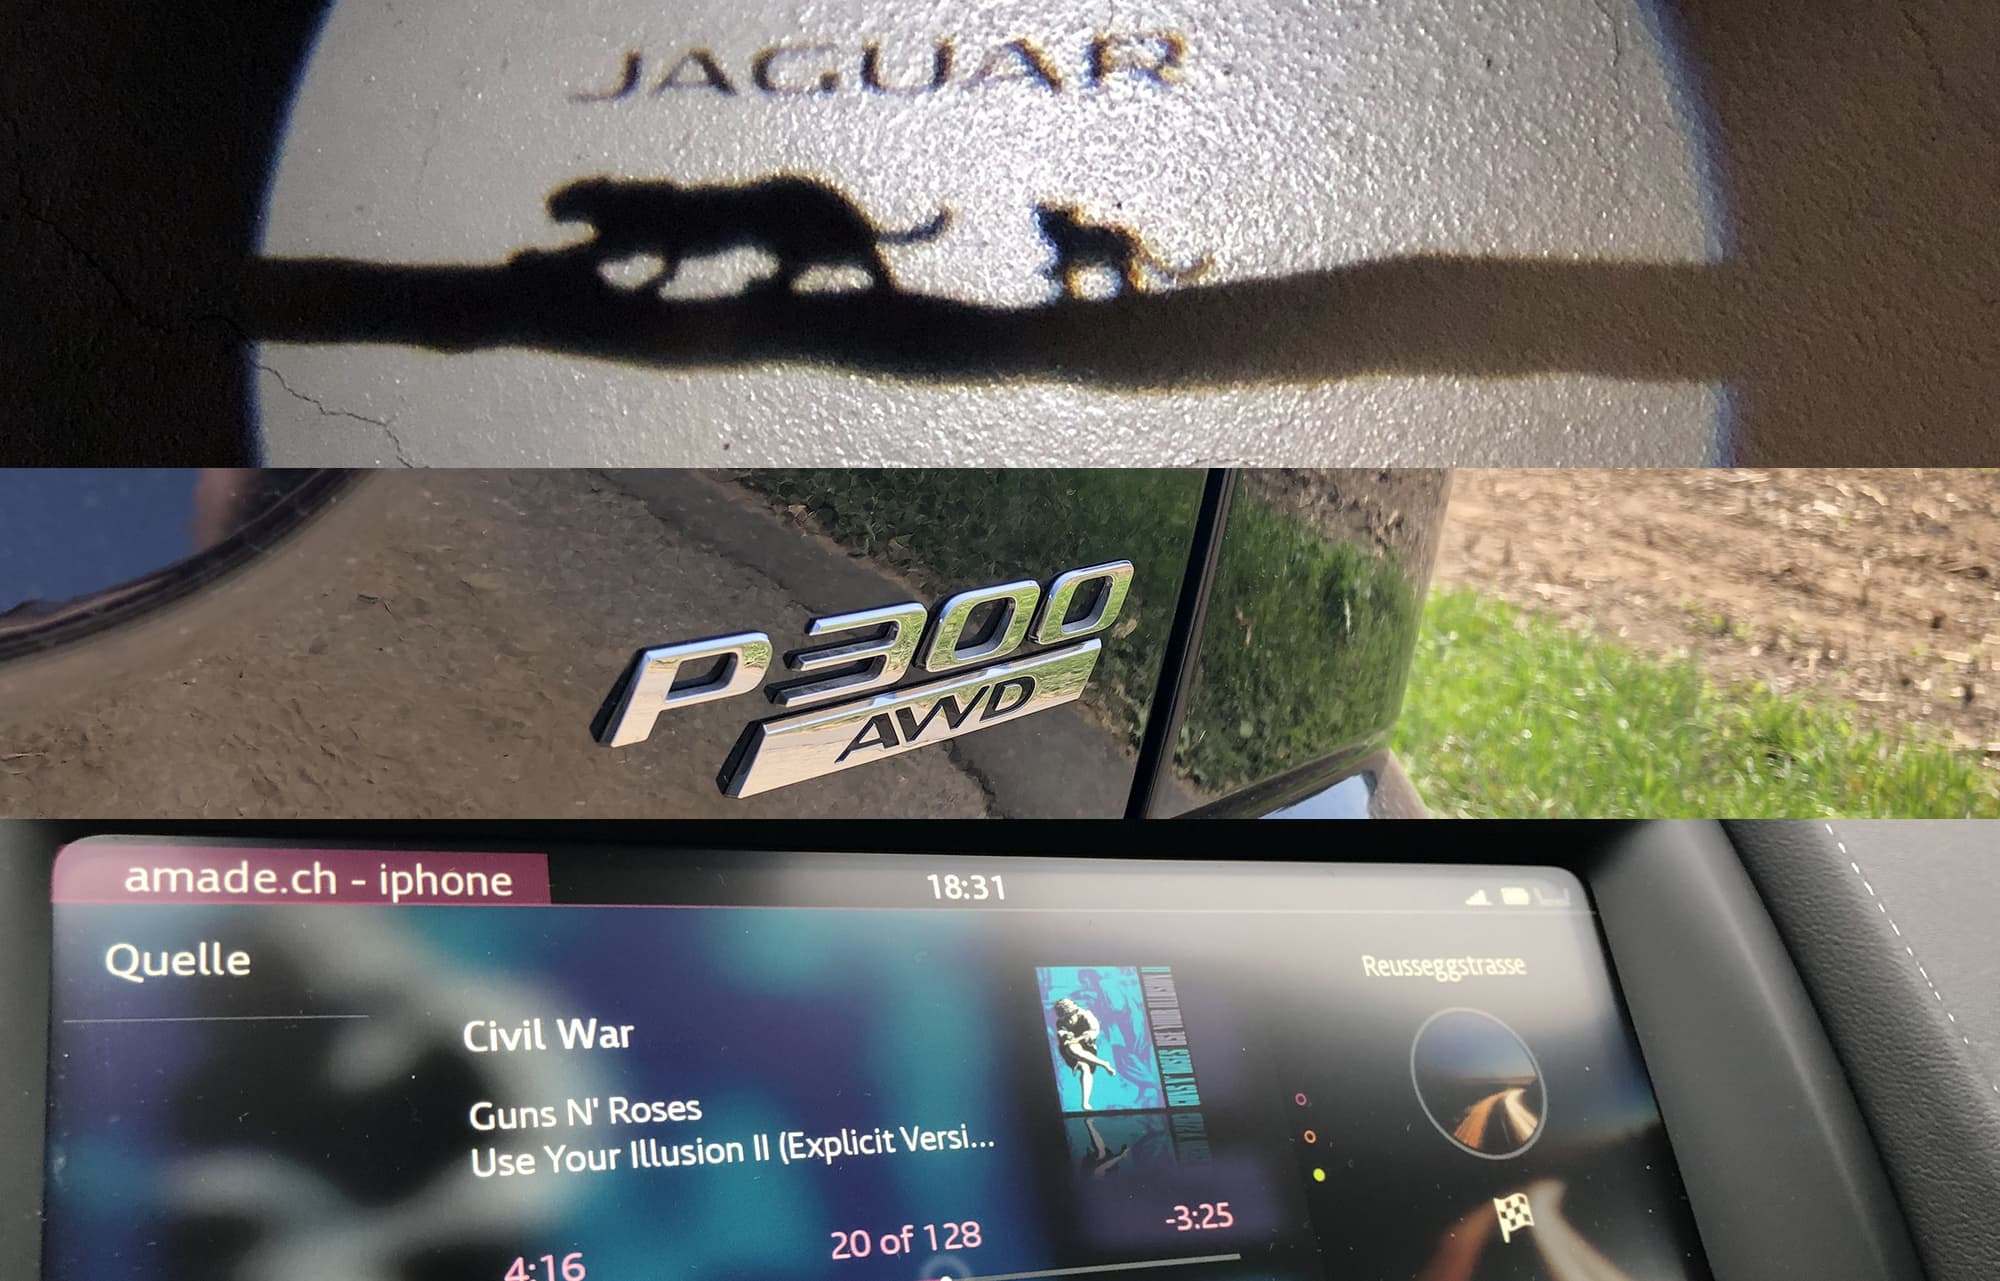 jaguarepace3